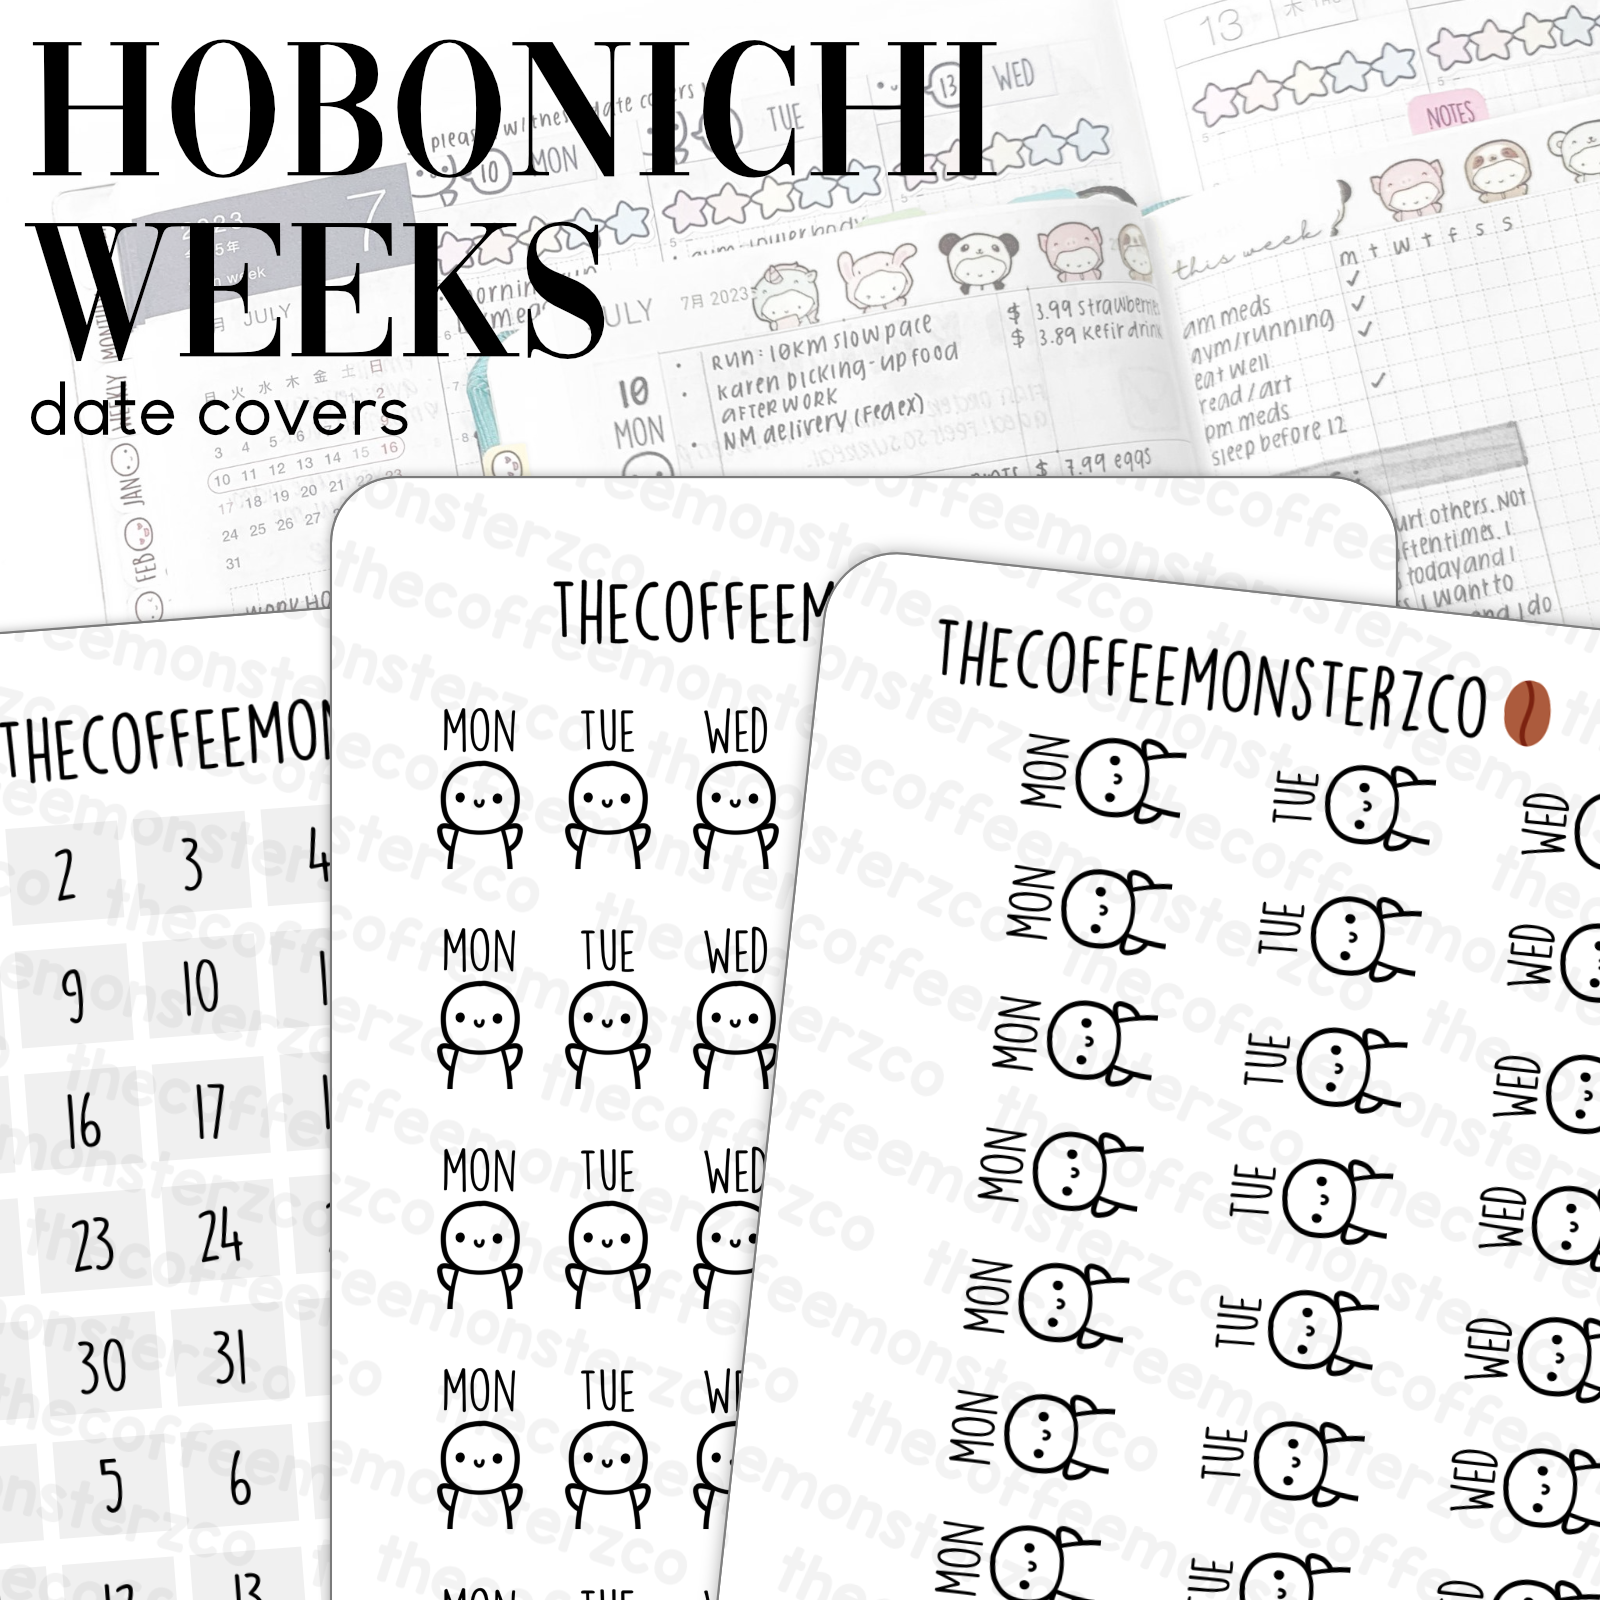 Hobonichi Weeks Date Covers